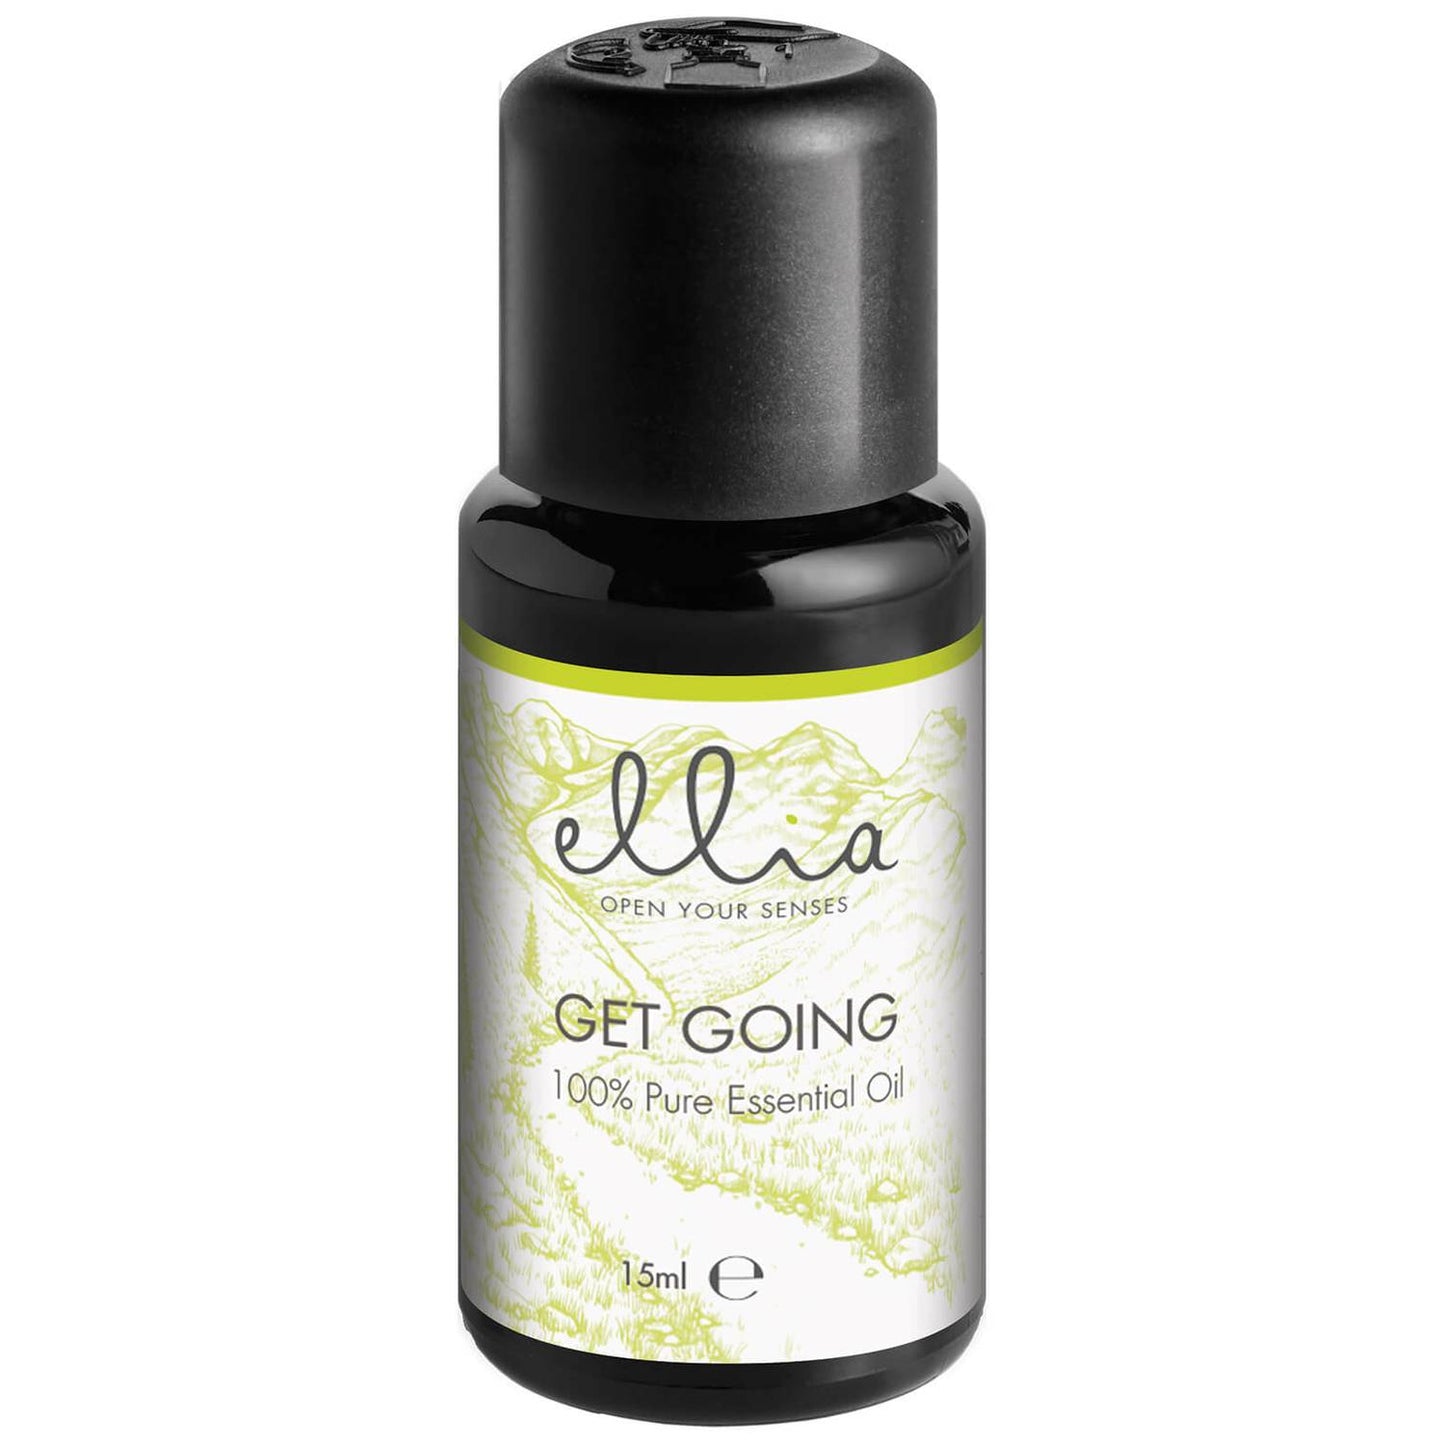 Ellia - Mixture Of Essential Oils For Aromatic Diffuser "Get Going" 15ml - Ellia - Ethni Beauty Market